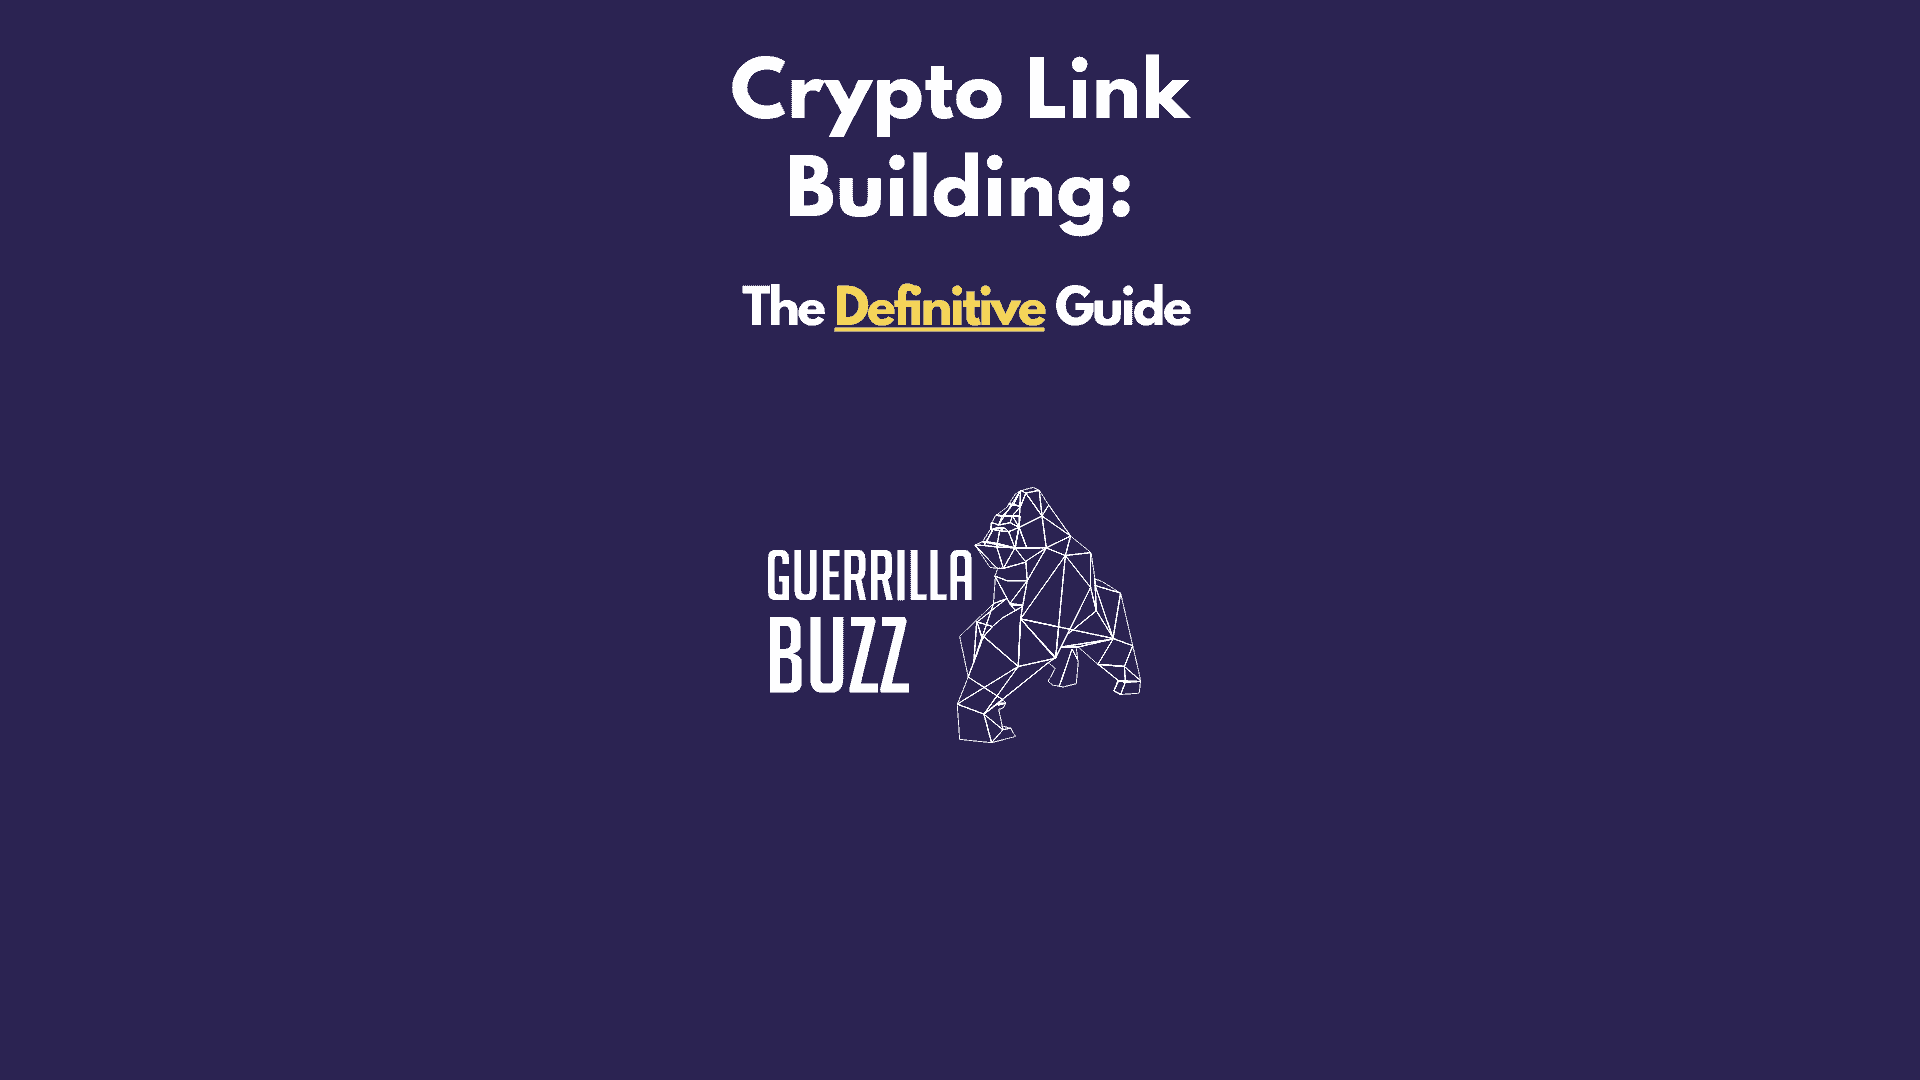 Crypto Link Building GuerrillaBuzz